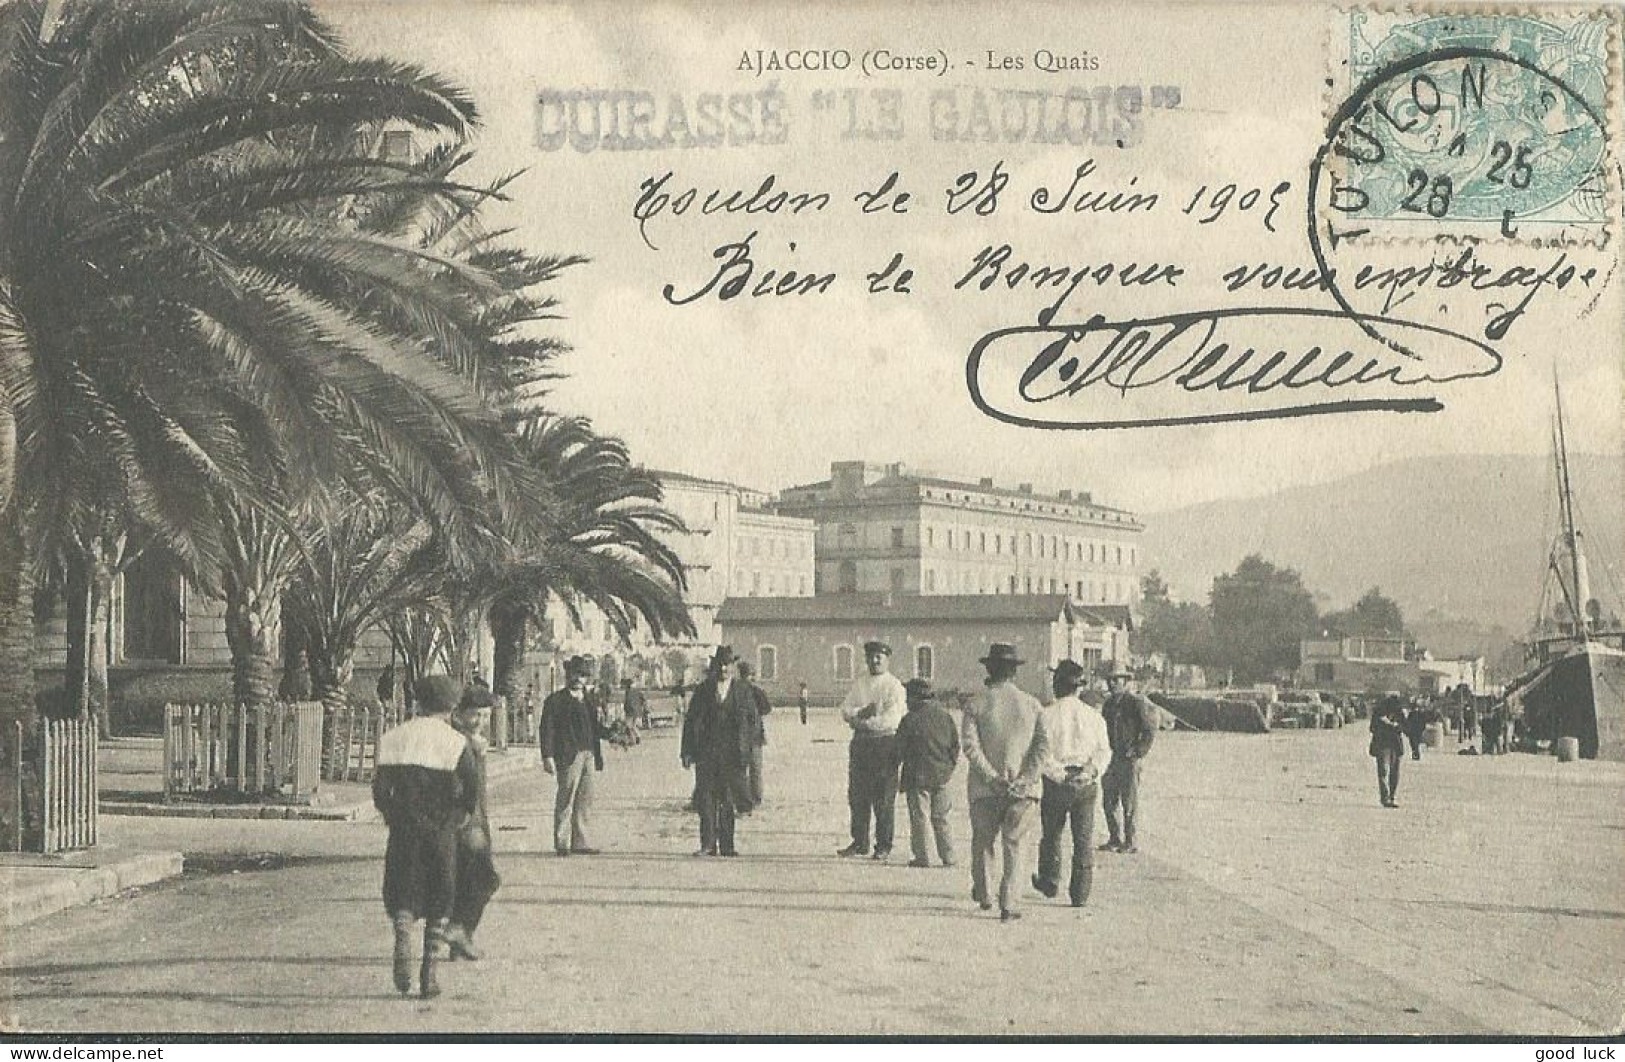 FRANCE CARTE 5c " LE GAULOIS " TOULON ( VAR ) POUR LORIENT ( MORBIHAN )  DE 1905 LETTRE COVER - Poste Maritime